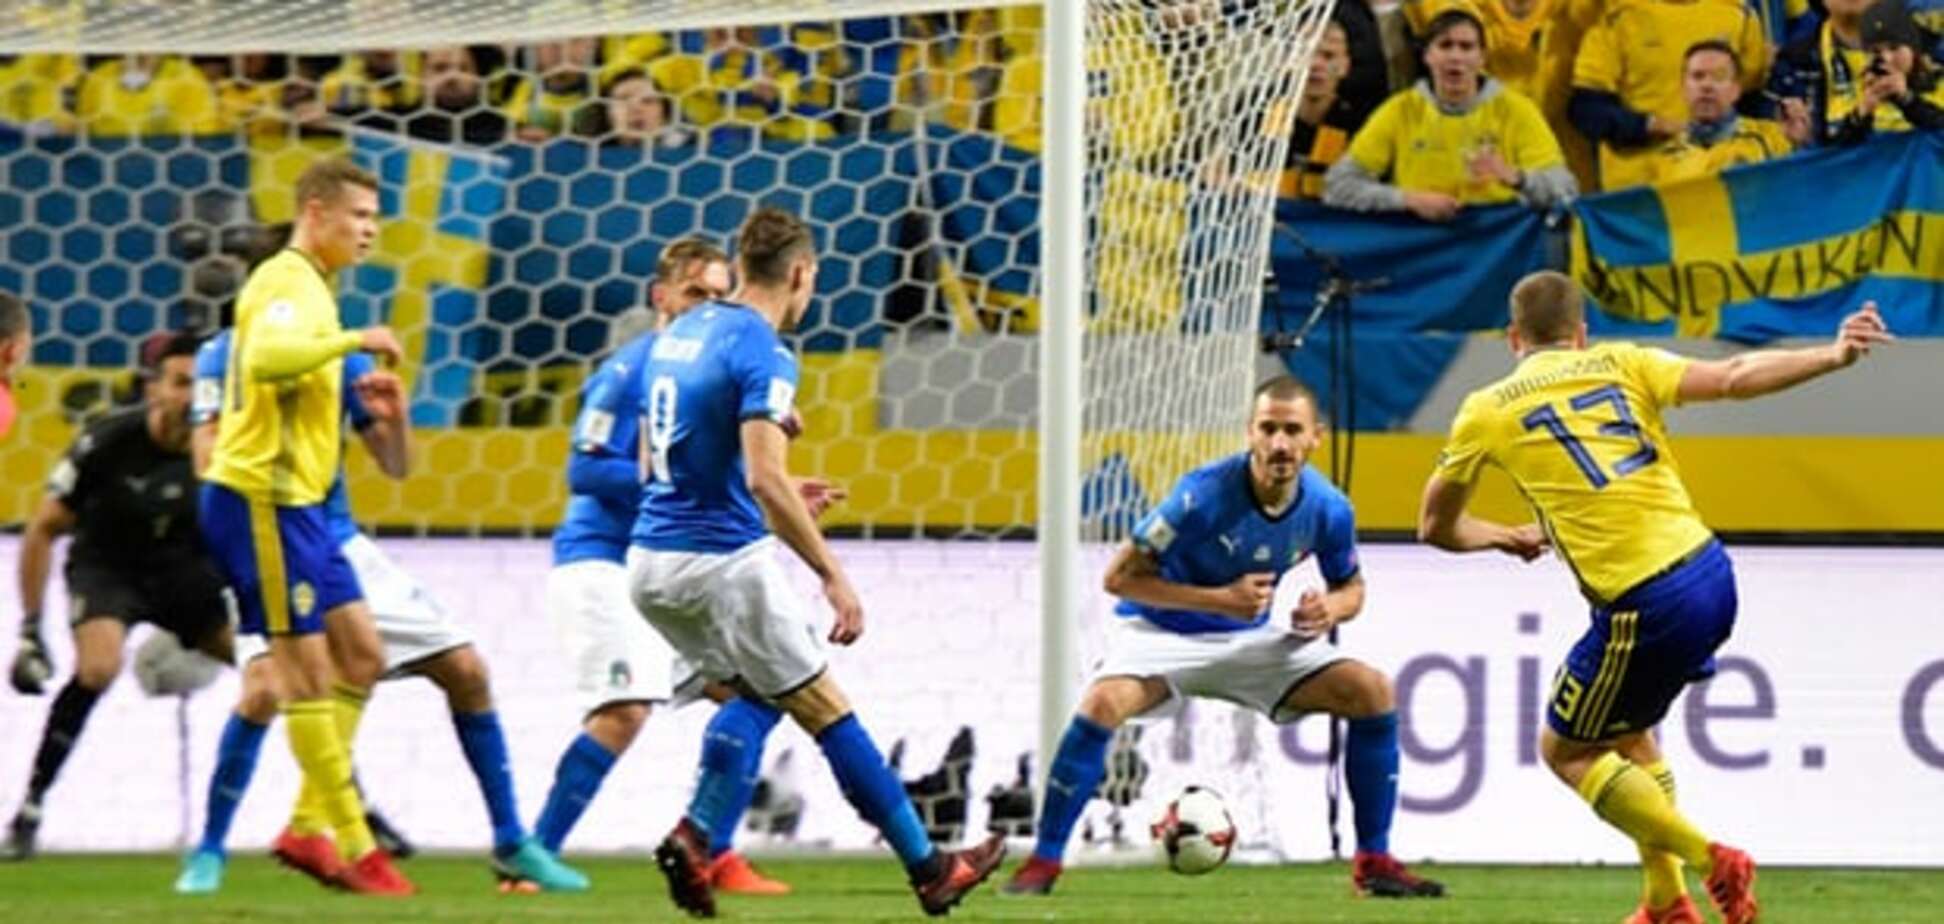 Без шансов для Буффона: Швеция обыграла Италию в плей-офф ЧМ-2018